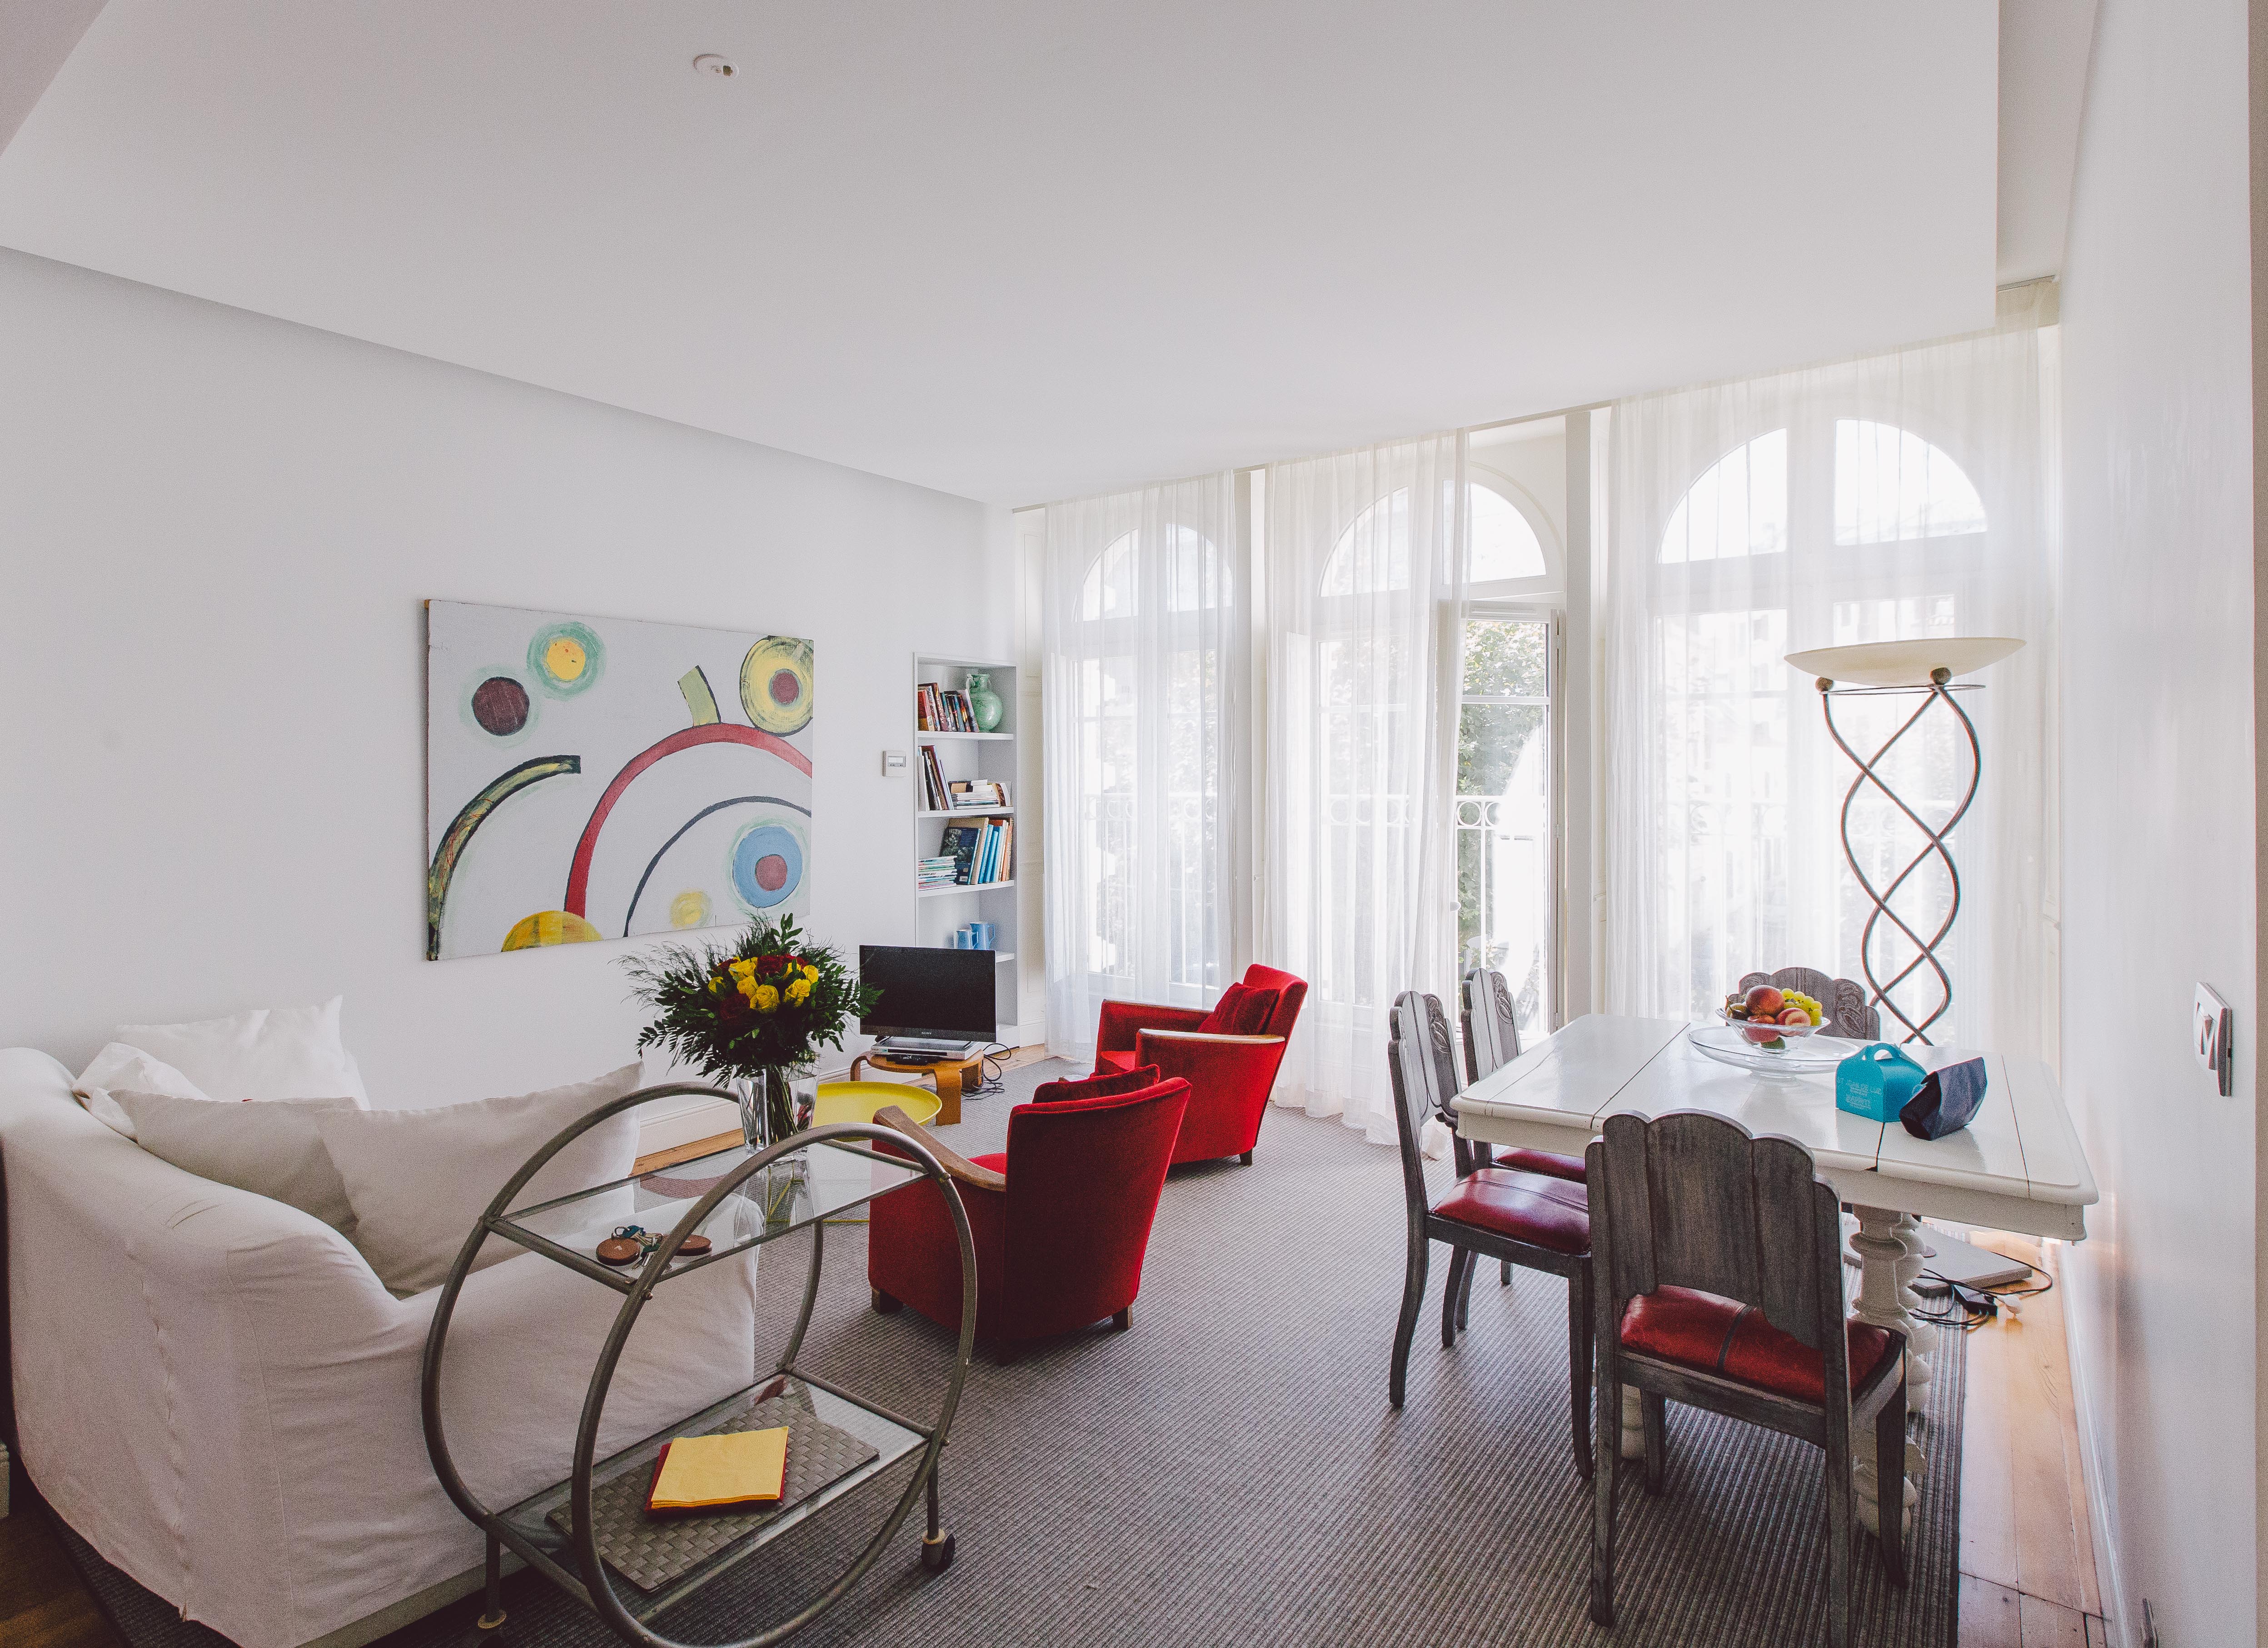 LA VILLA LES ROSES Luxury apartment - Flats for Rent in Saint-Jean-de-Luz,  Aquitaine, France - Airbnb